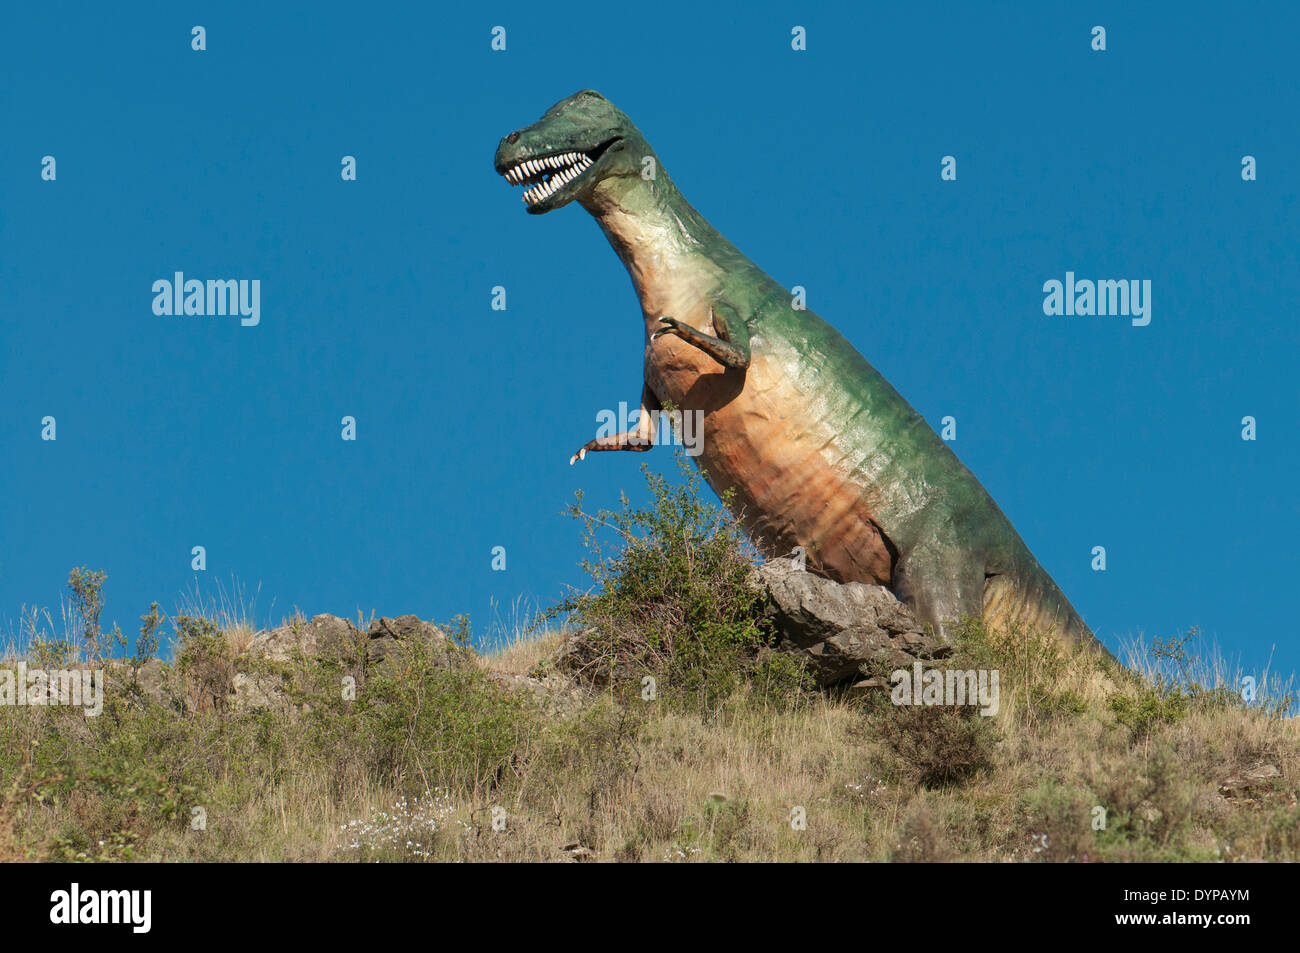 Modelli ricreazione in dimensioni reali di dinosauri in vetroresina e cemento nel sito paleontologico di Valdecevillo, la Rioja, Spagna. Foto Stock